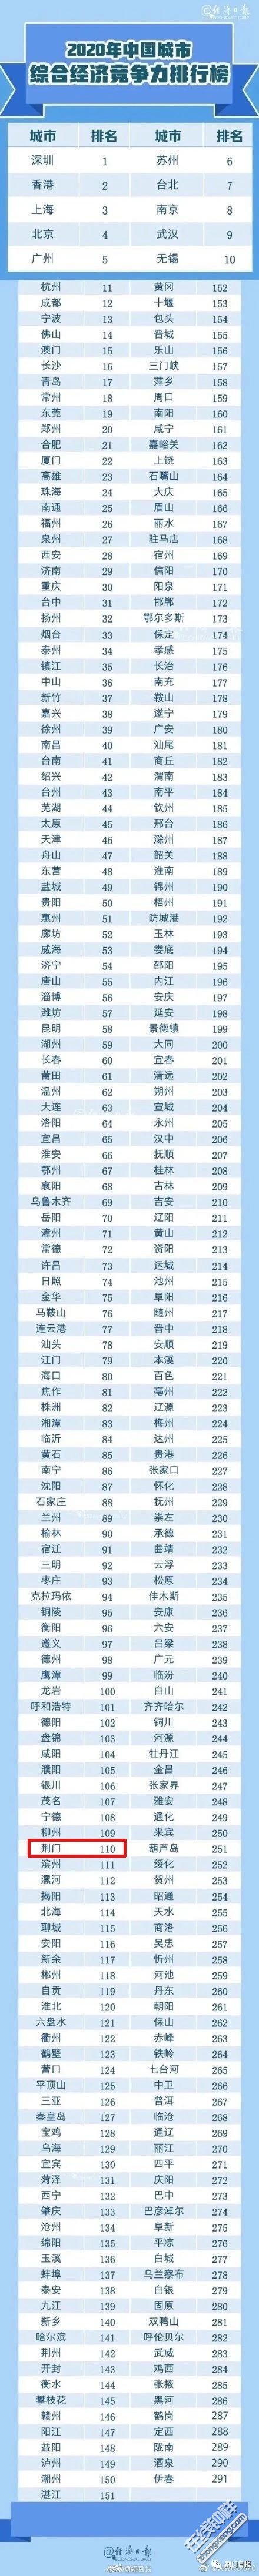 《世界城市名册2018》出炉上海位列+级别，总排名第6!